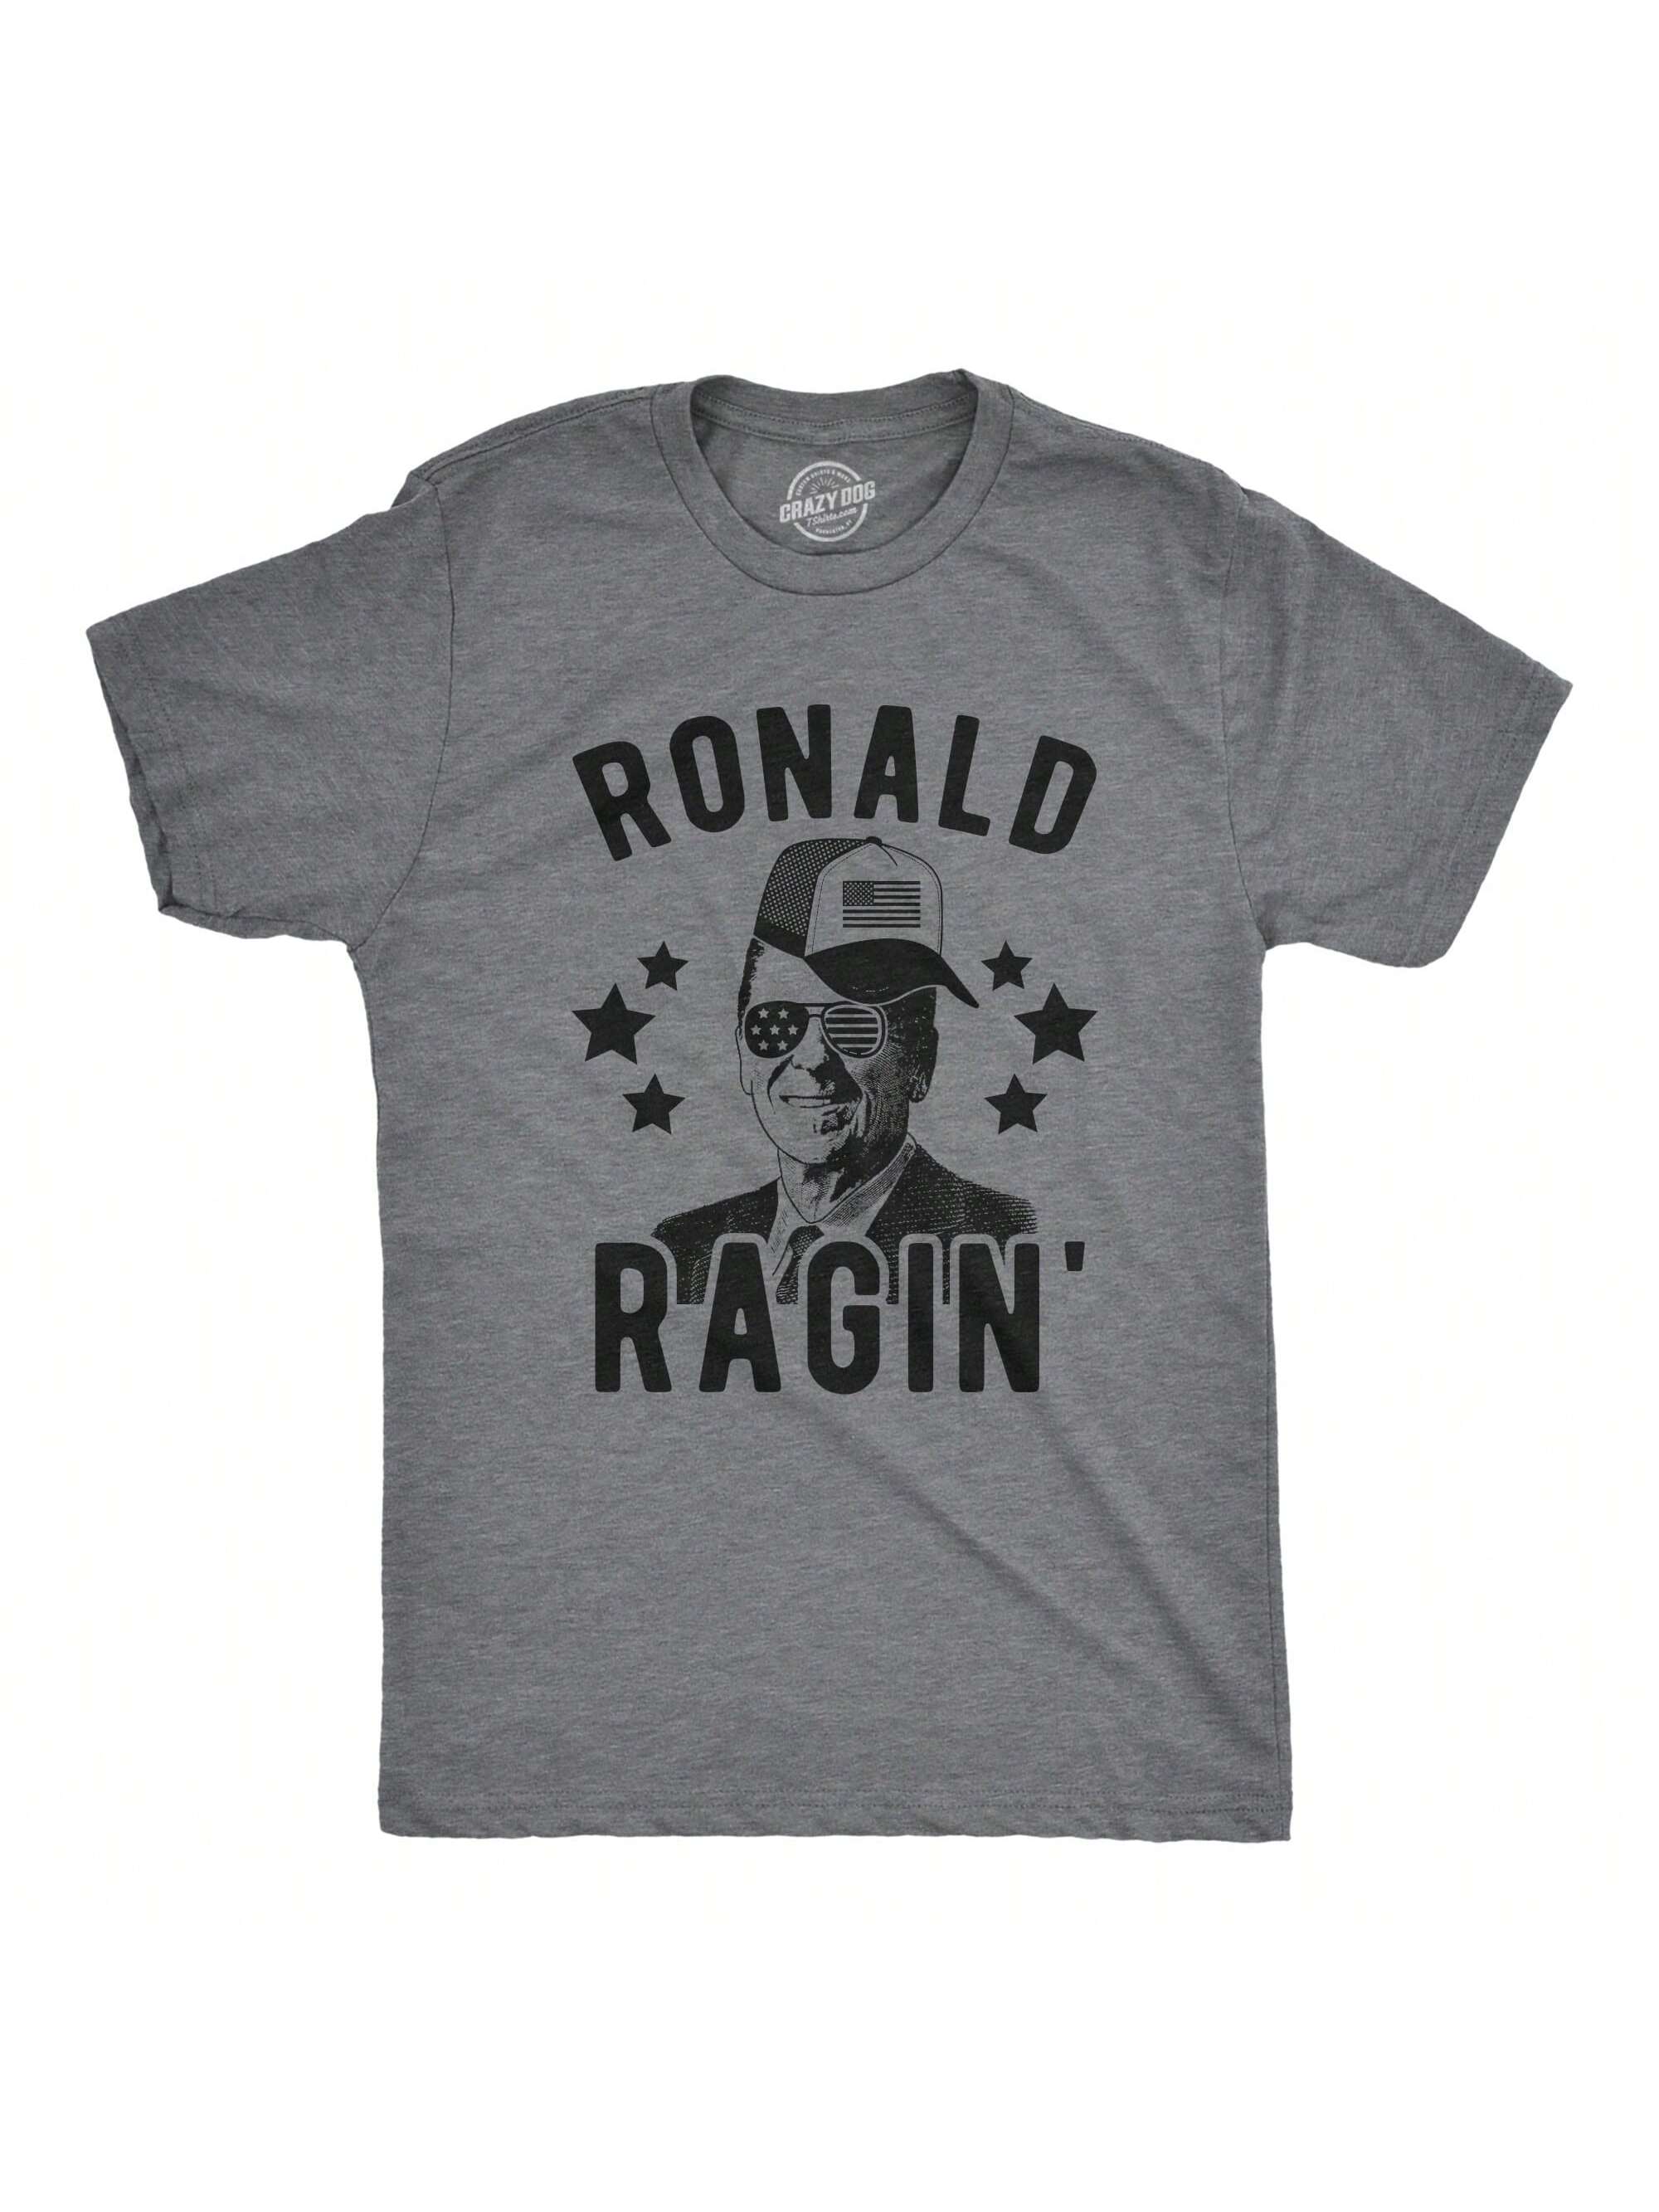 Мужская футболка Ronald Ragin', темный хизер серый